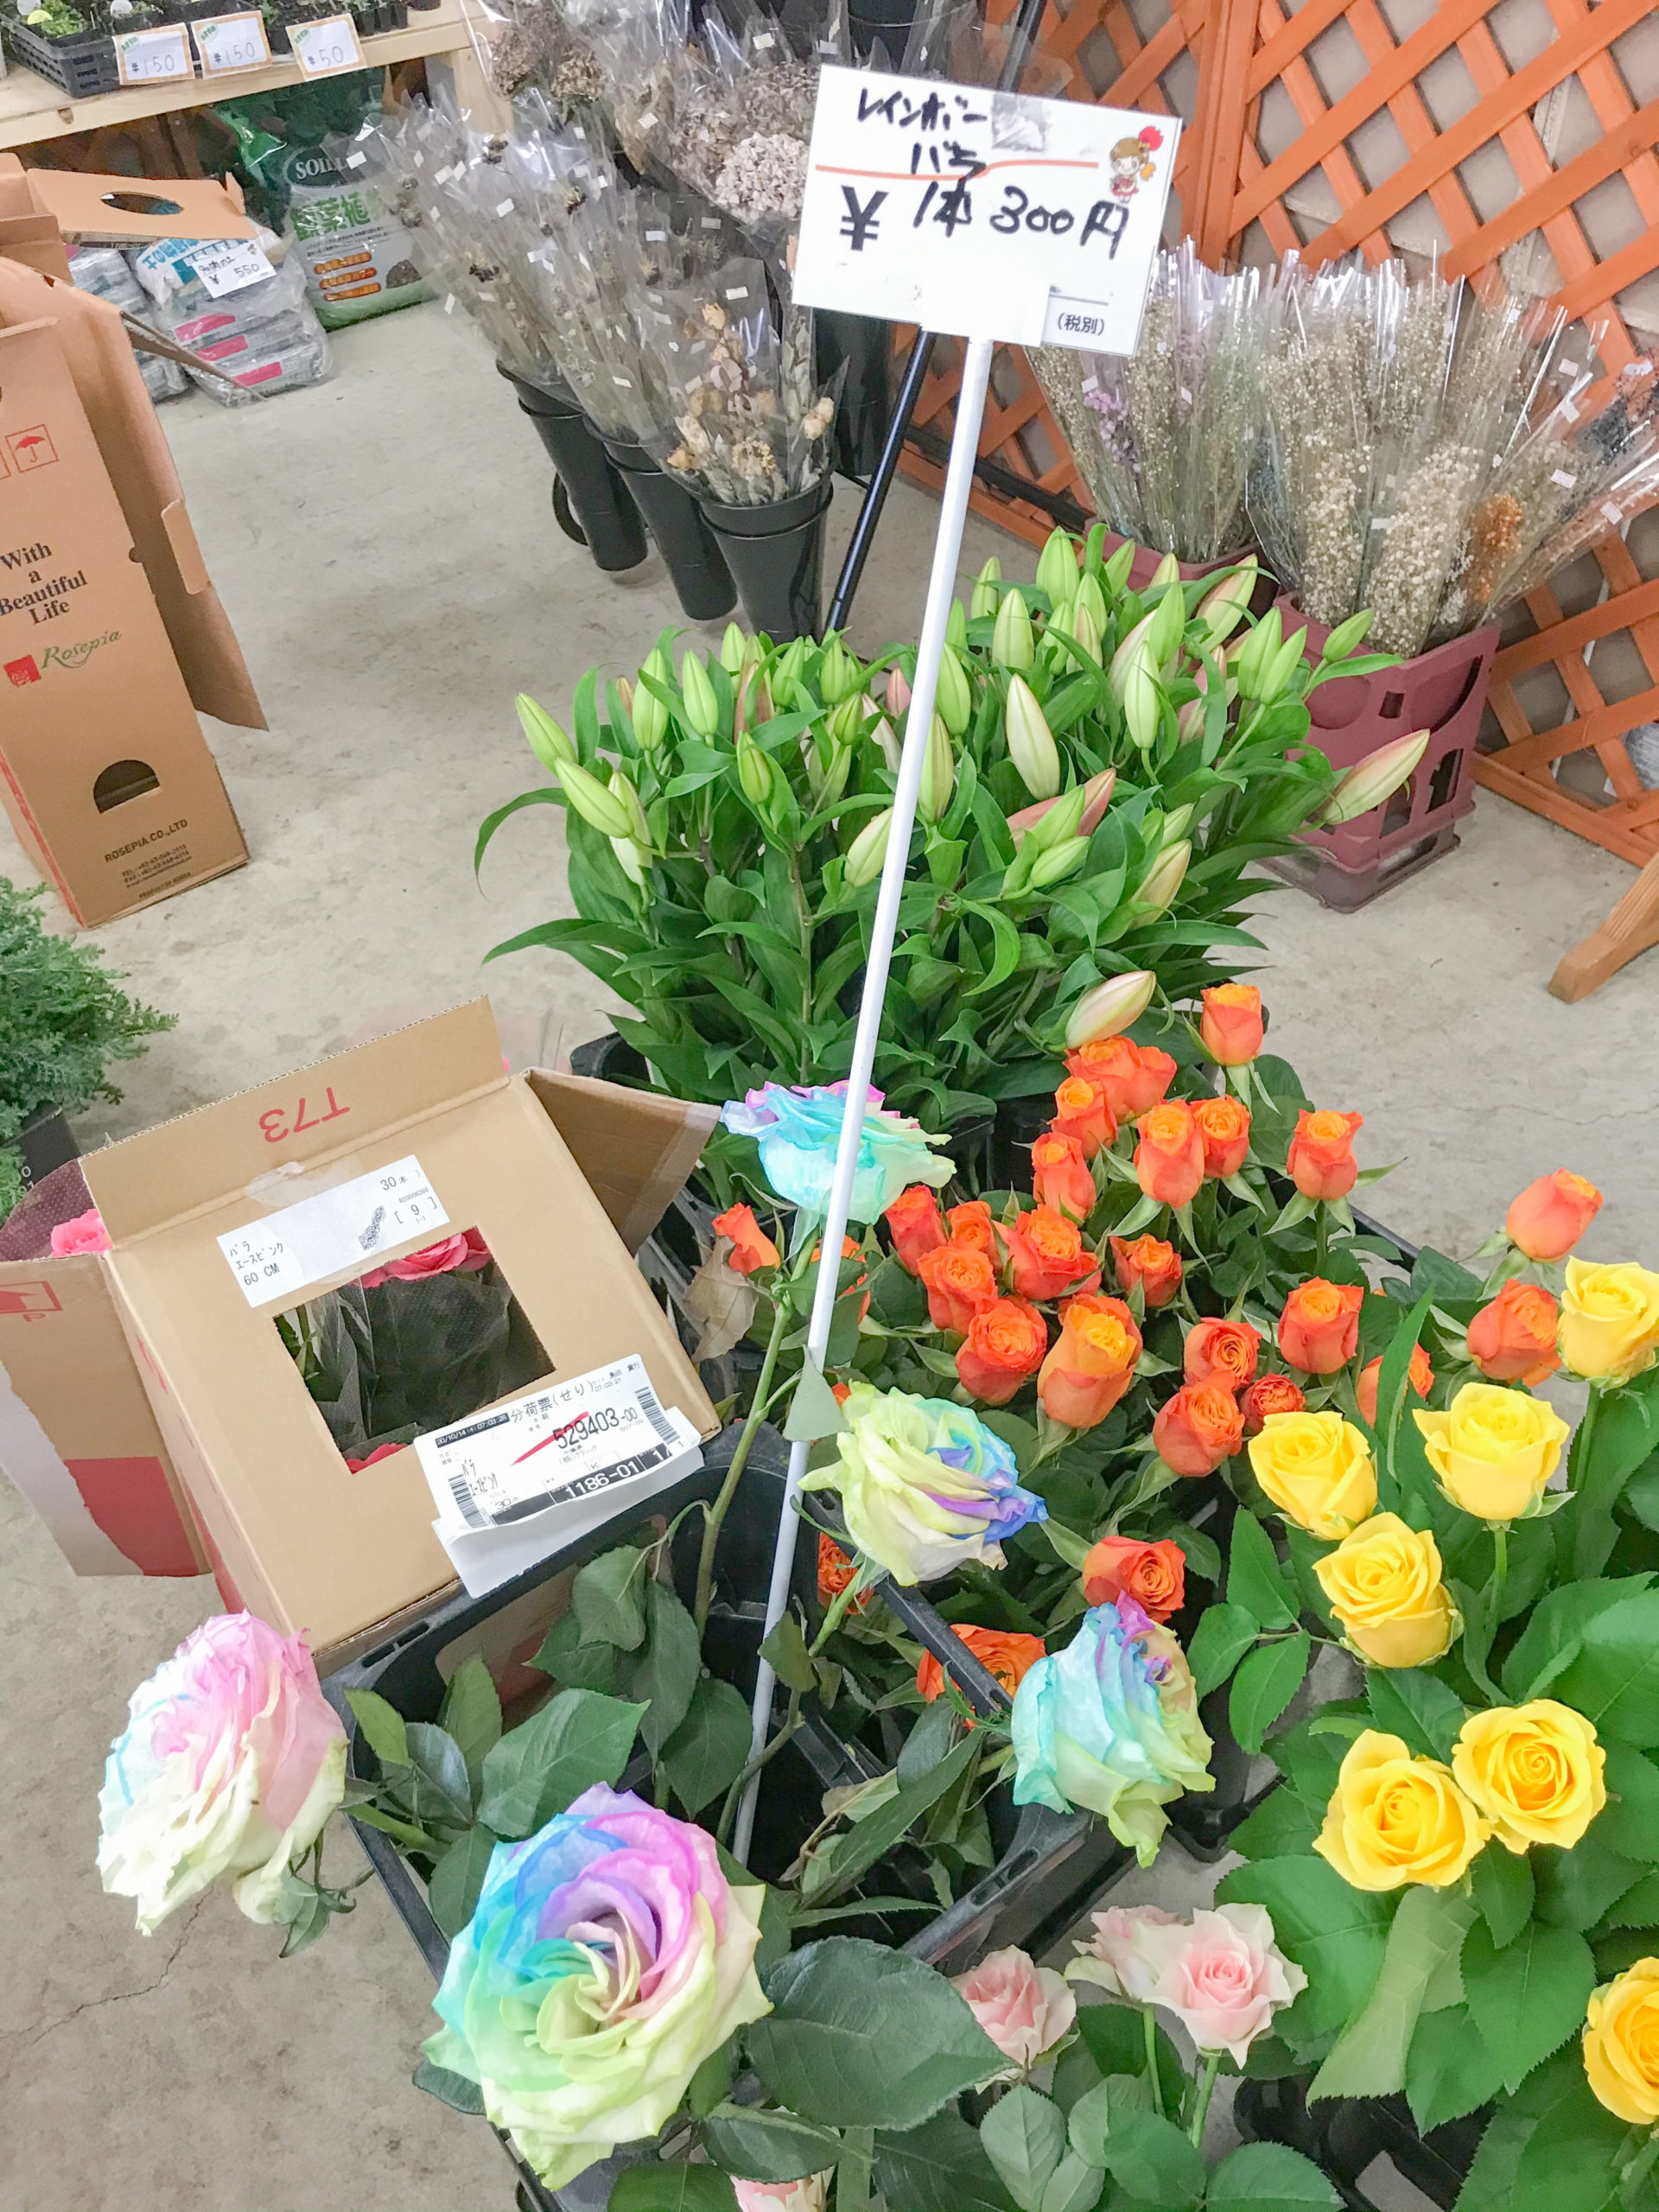 埼玉県でドライフラワー買うなら 大宮フラワーセンター が激安でおすすめ 生花も安い